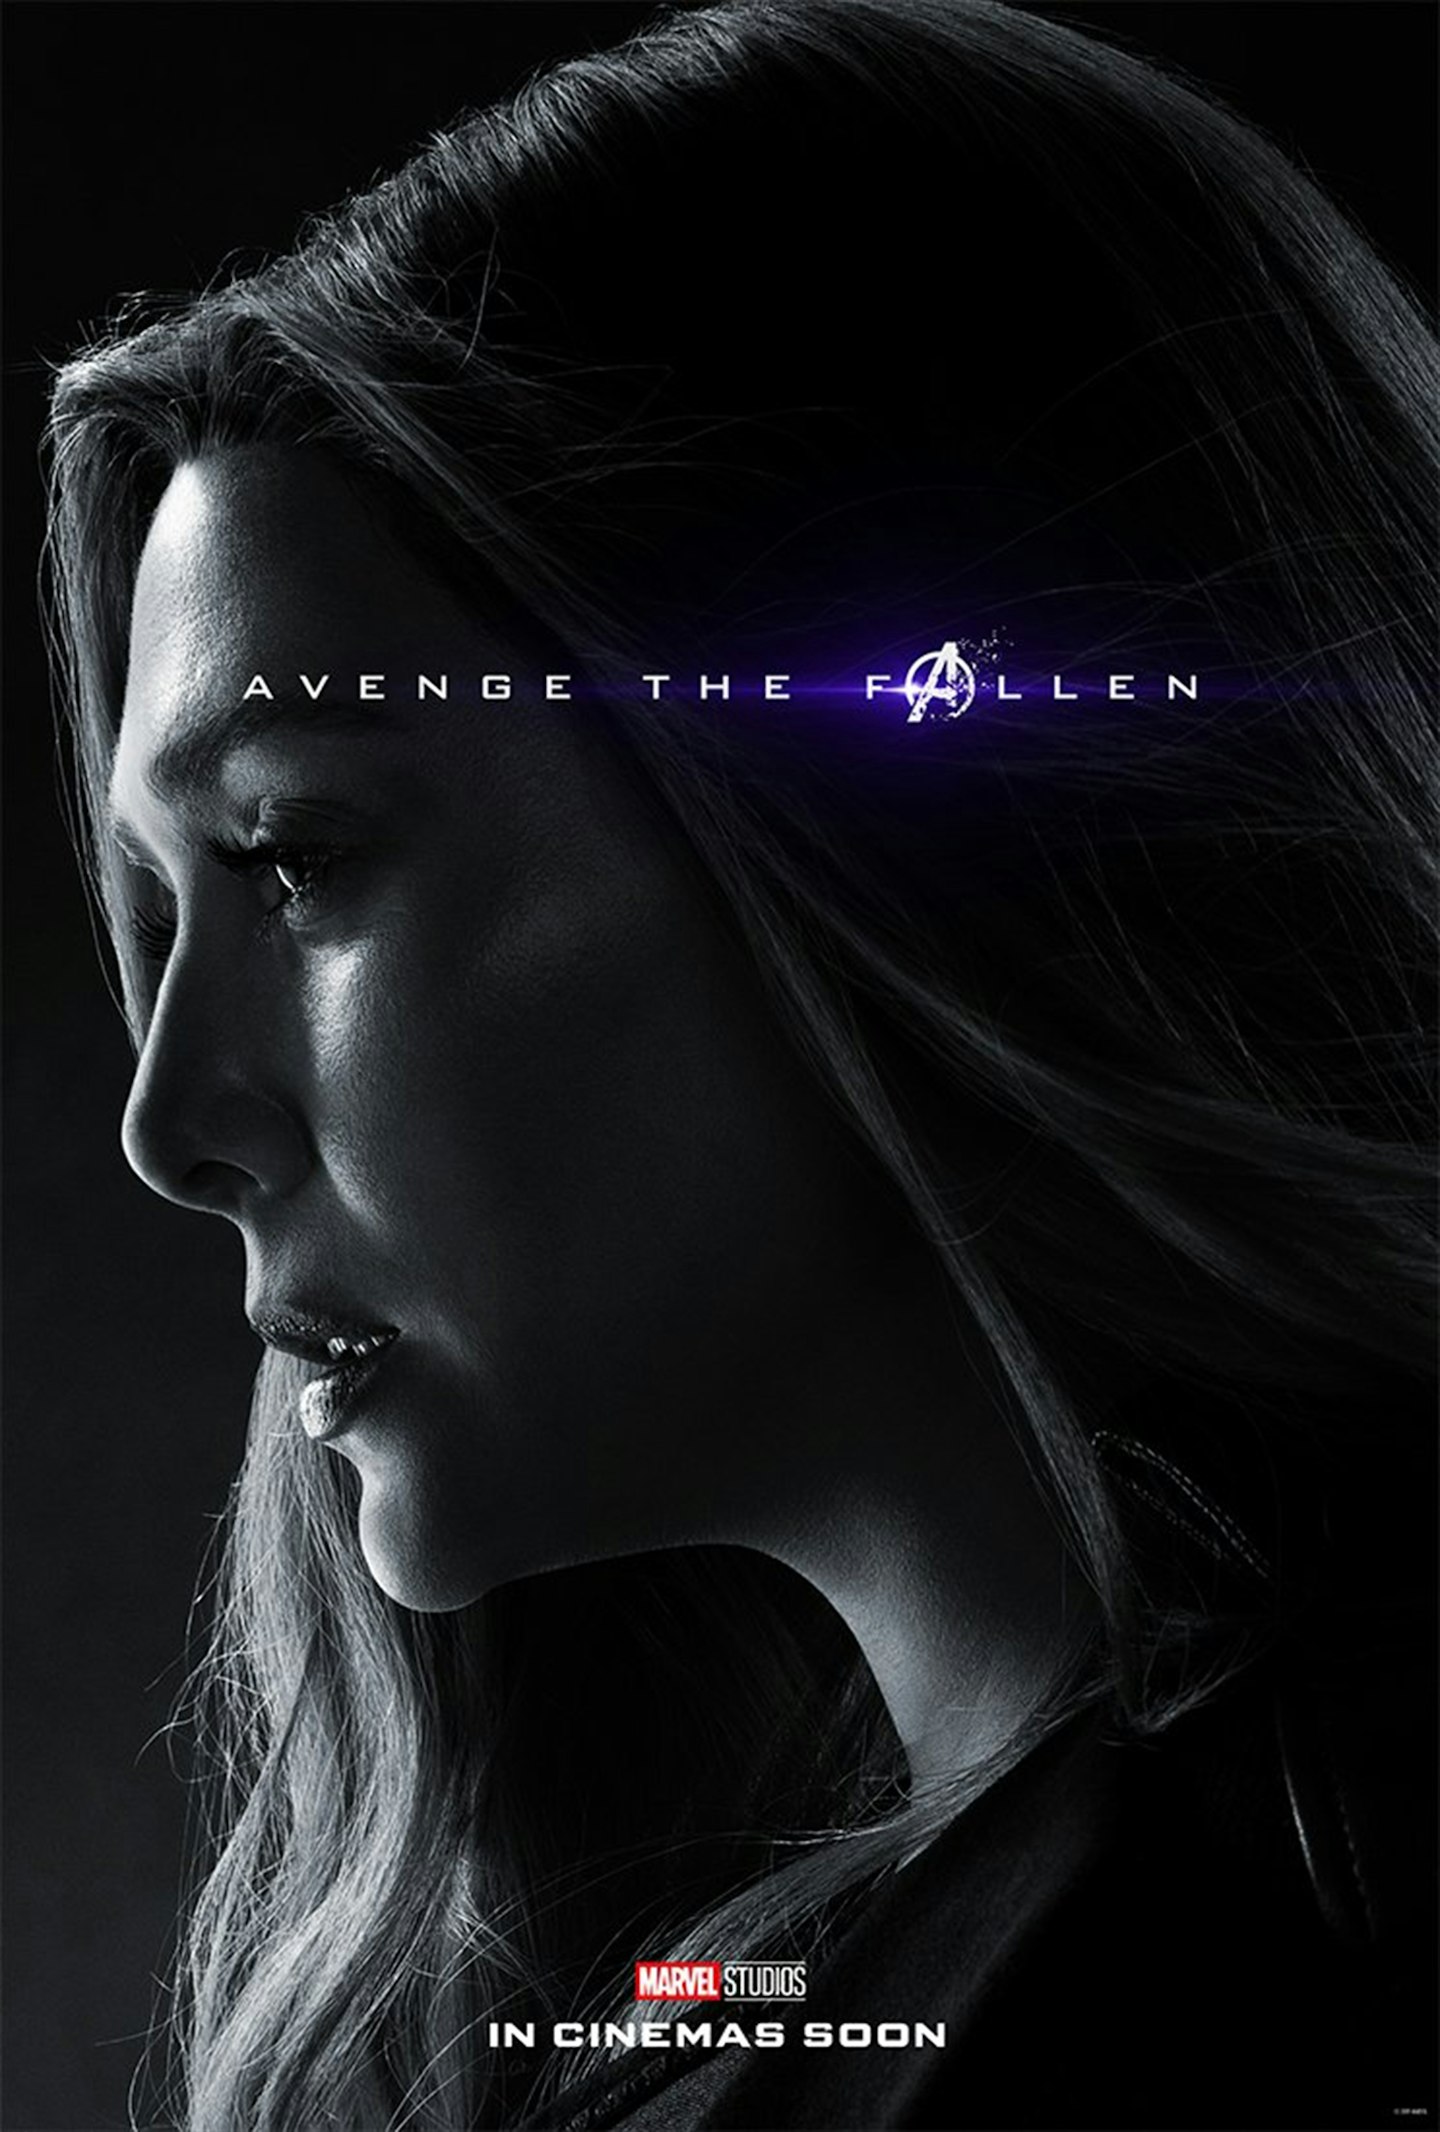 Avengers: Endgame posters